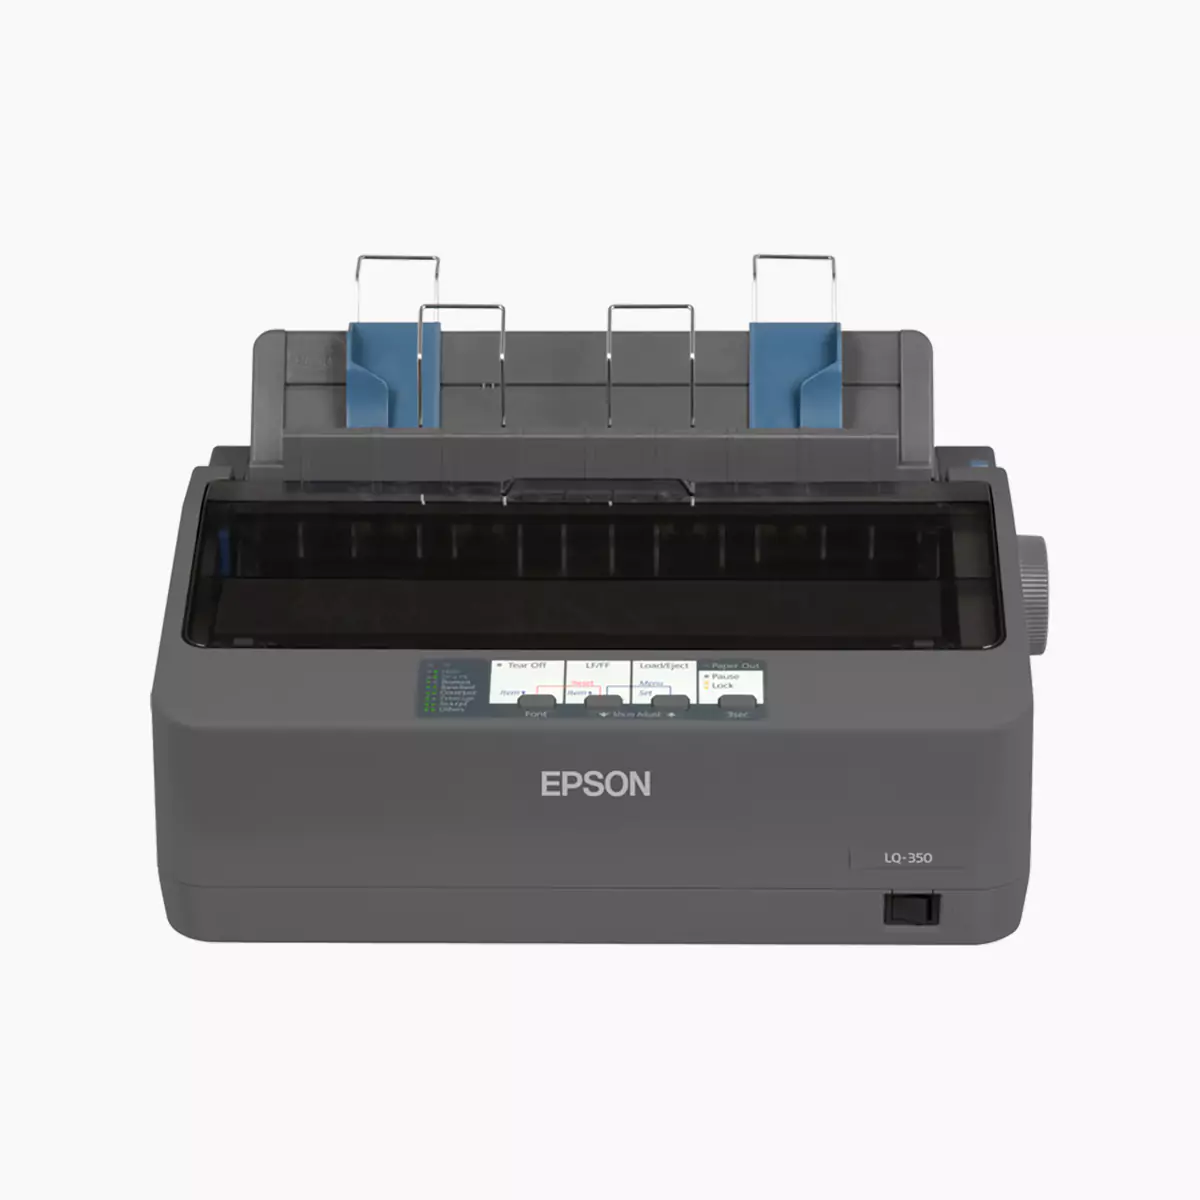 EPSON LQ-350 Dot Matrix Printer